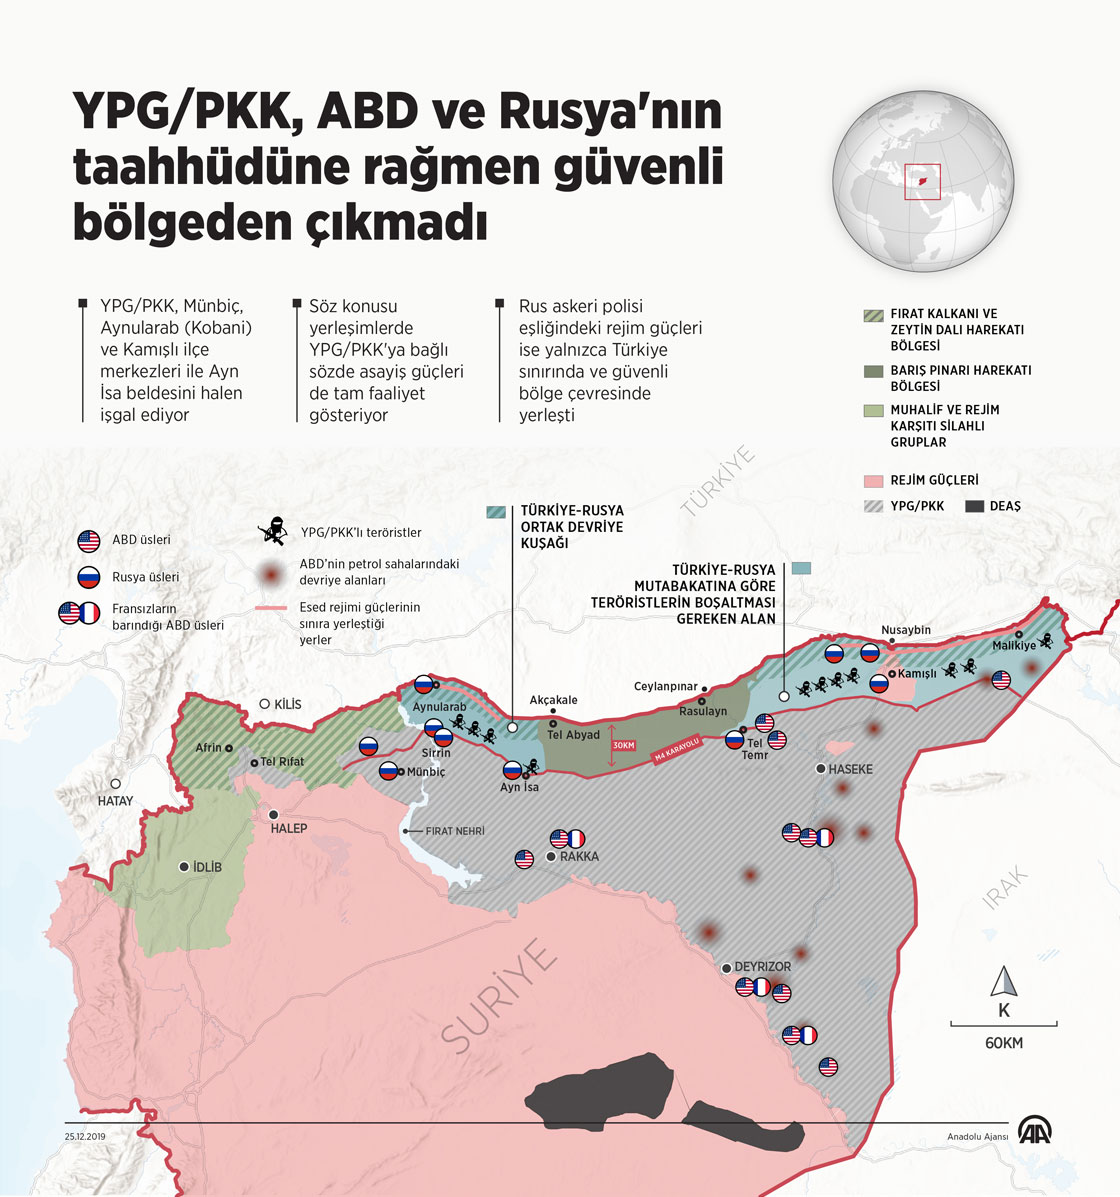 YPG/PKK, ABD ve Rusya'nın taahhüdüne rağmen güvenli bölgeden çıkmadı